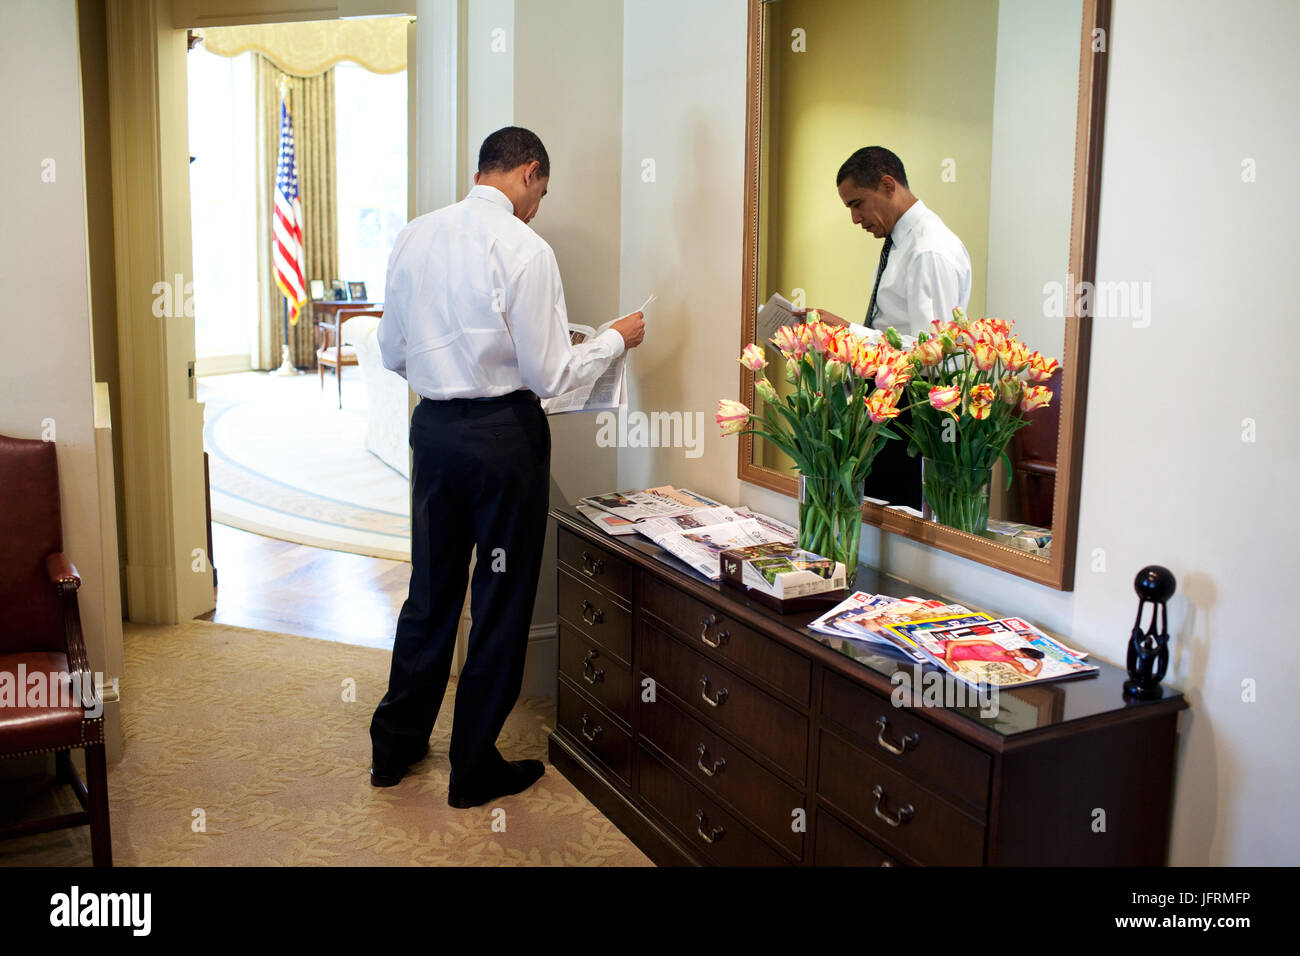 Le président Barack Obama lit le journal dans le bureau ovale extérieur 3/5/09. Photo Officiel de la Maison Blanche par Pete Souza Banque D'Images